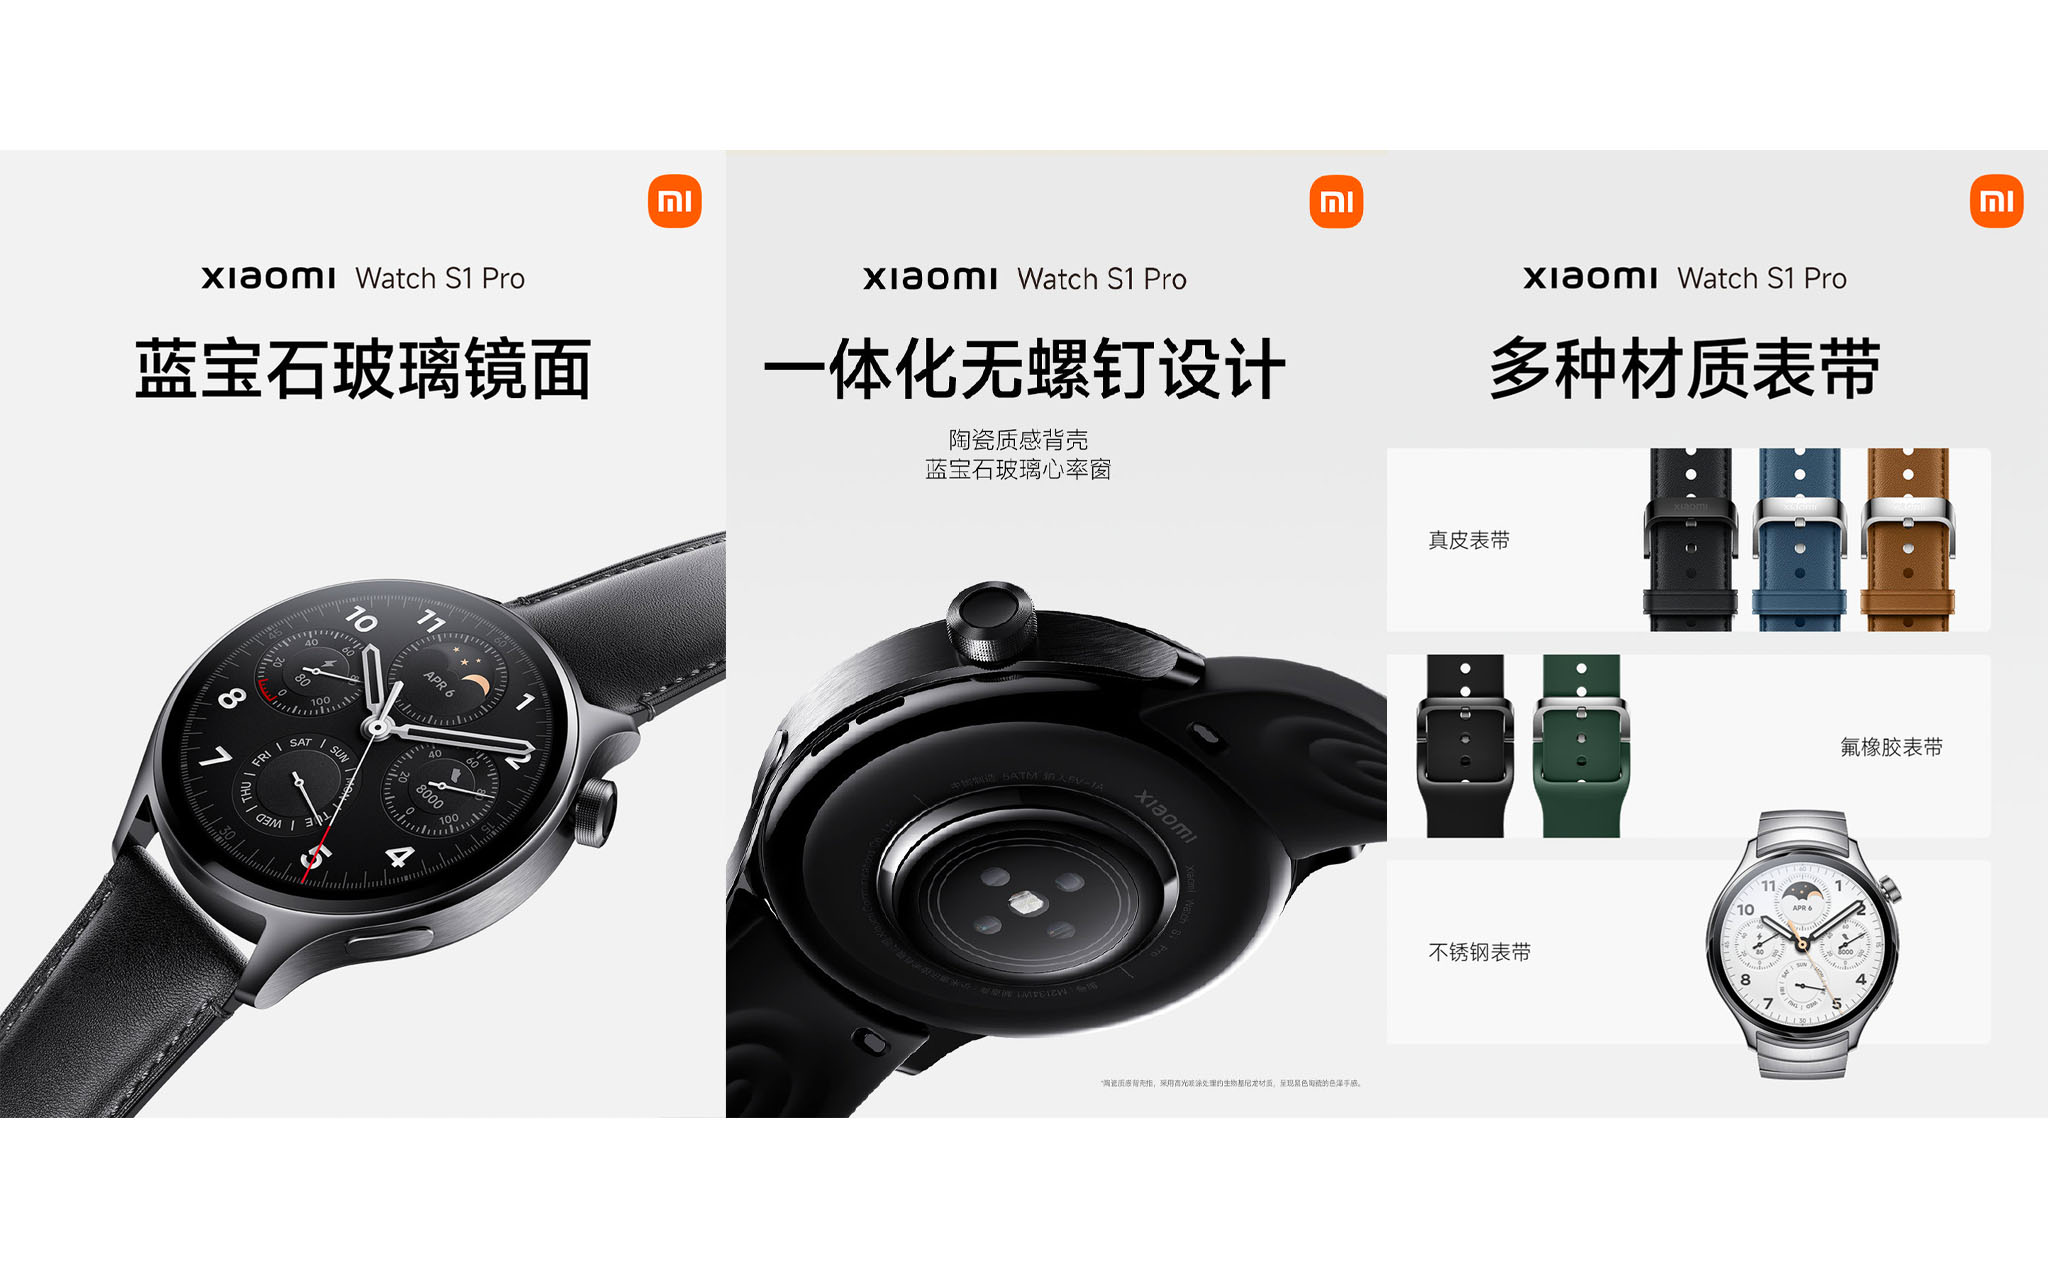 Xiaomi Watch S1 Pro: Thời lượng pin lên đến 14 ngày, 3 phiên bản dây đeo, giá khoảng 5,2 triệu